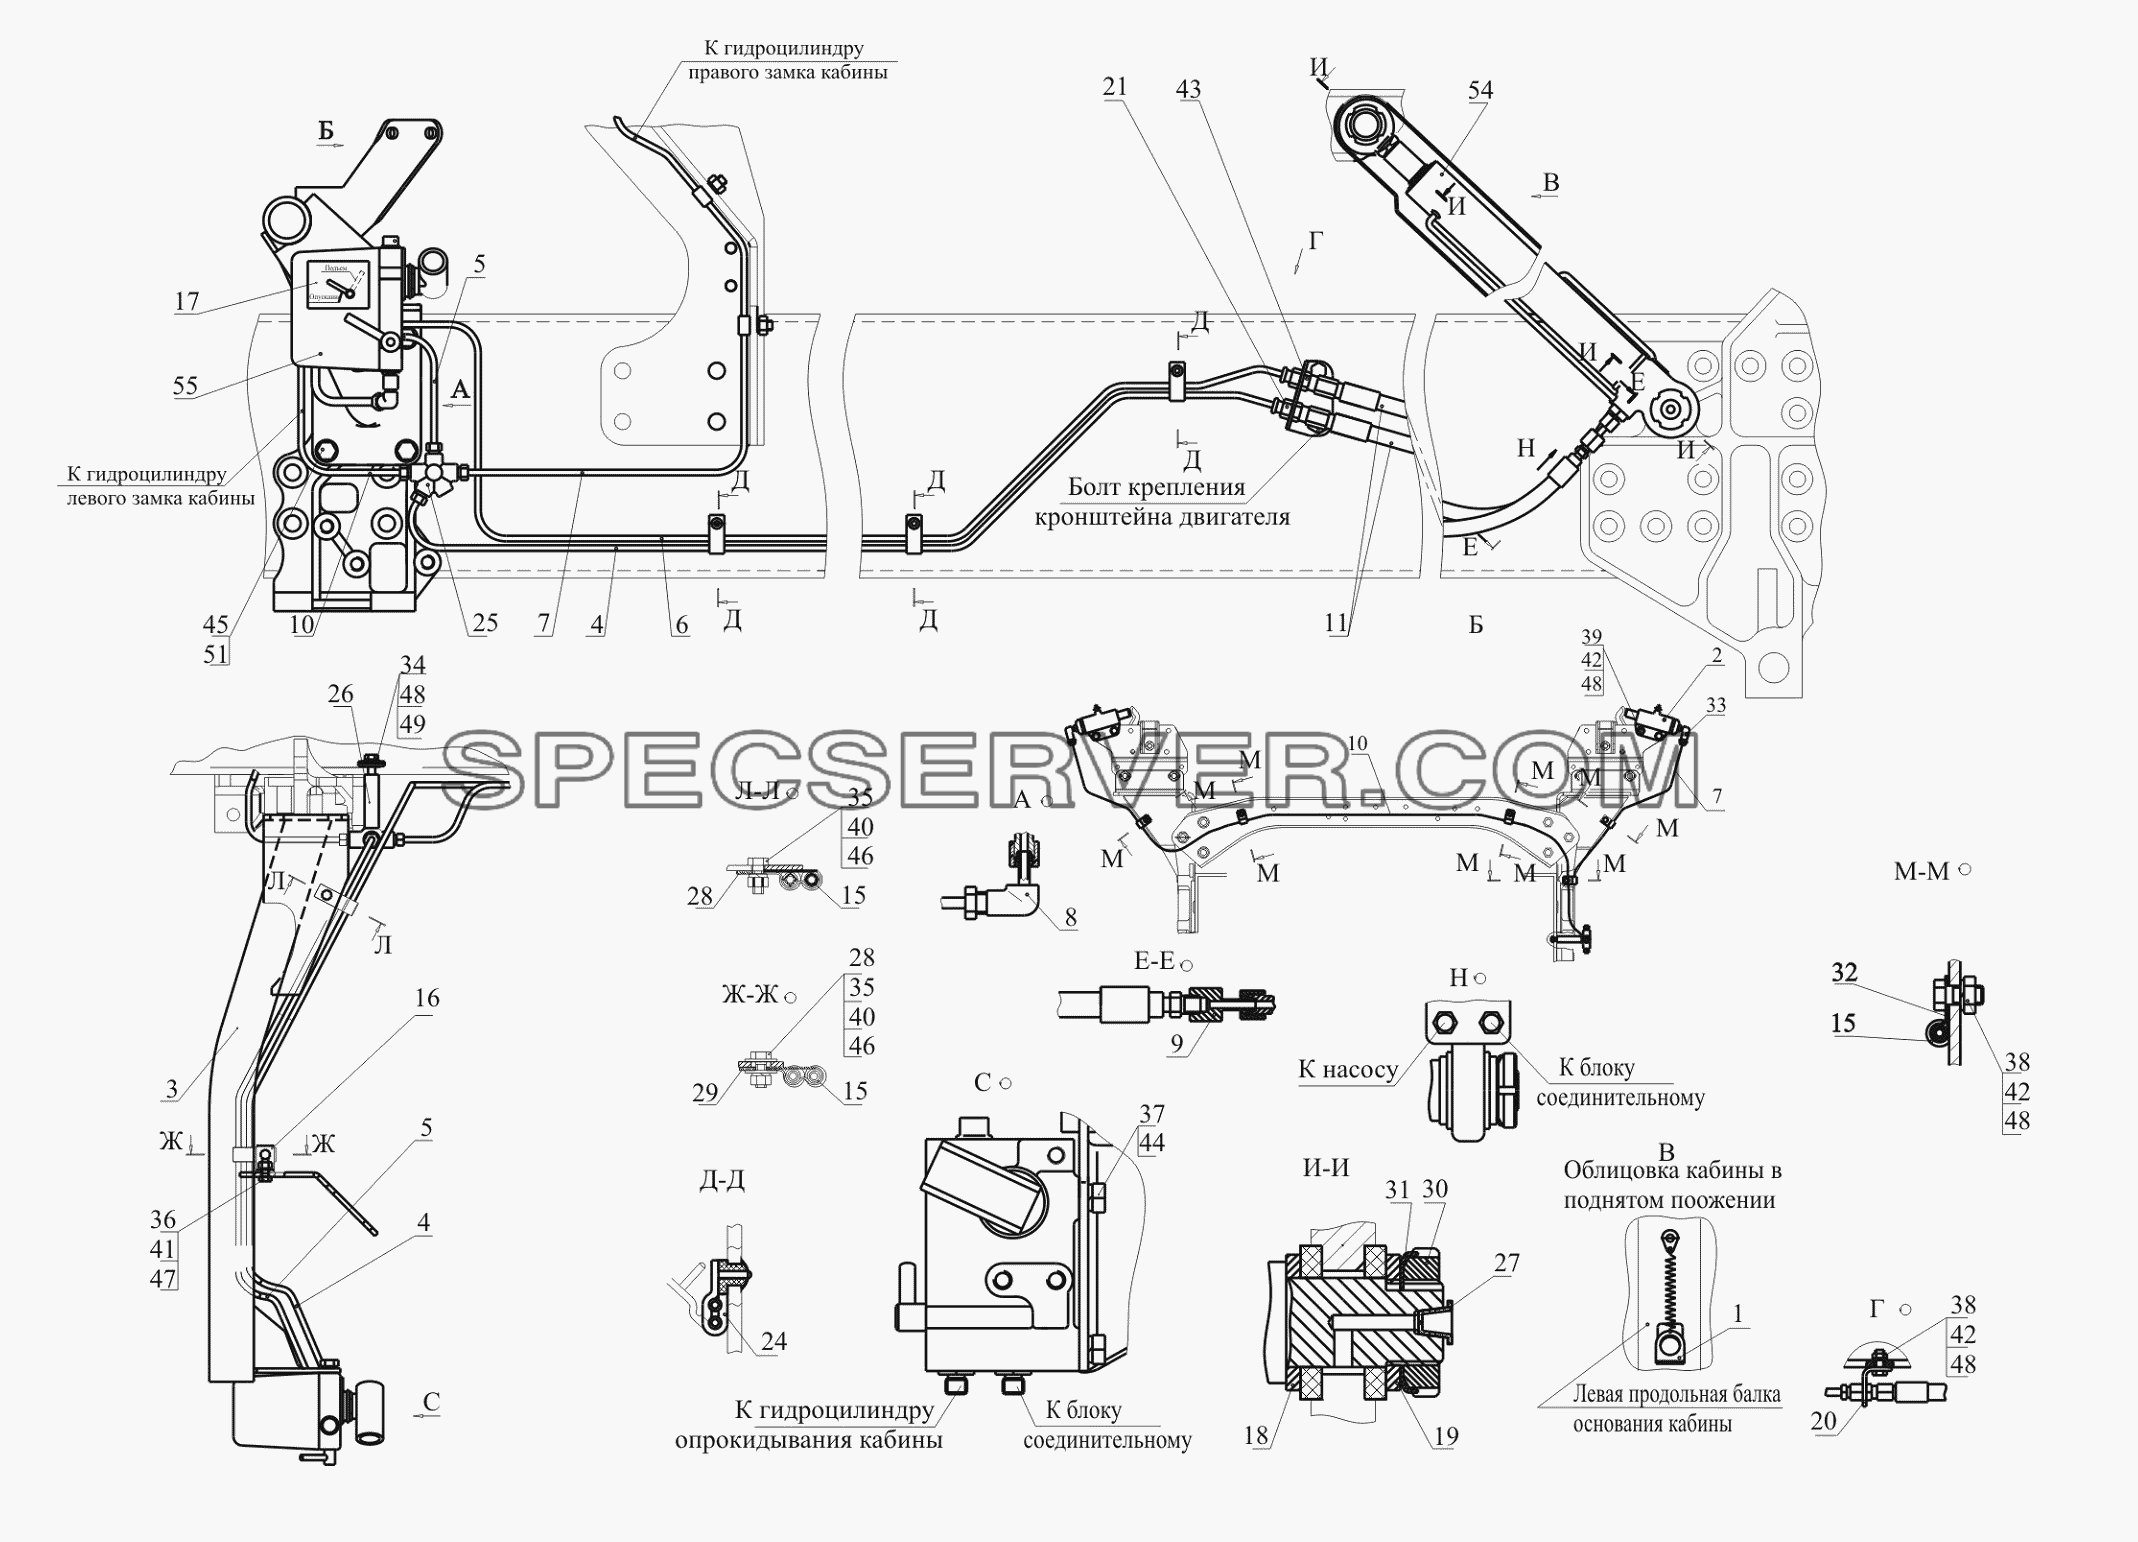 Установка механизма подъема кабины 650119-5000040-010 для МАЗ-650119 (список запасных частей)